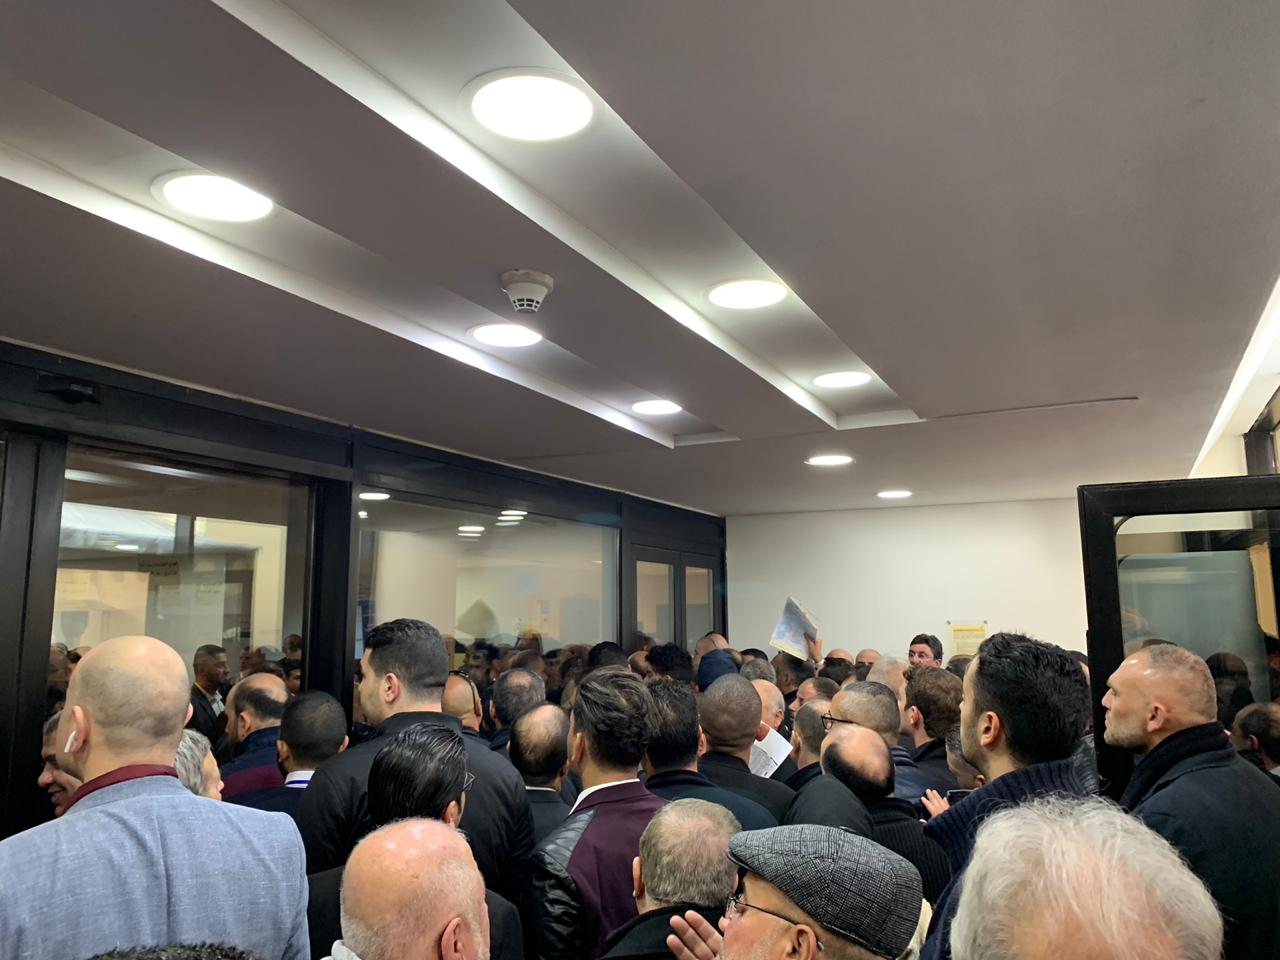 بالفبديو : الهيئة المستقلة تغلق أبواب كلية القدس أمام الناخبين